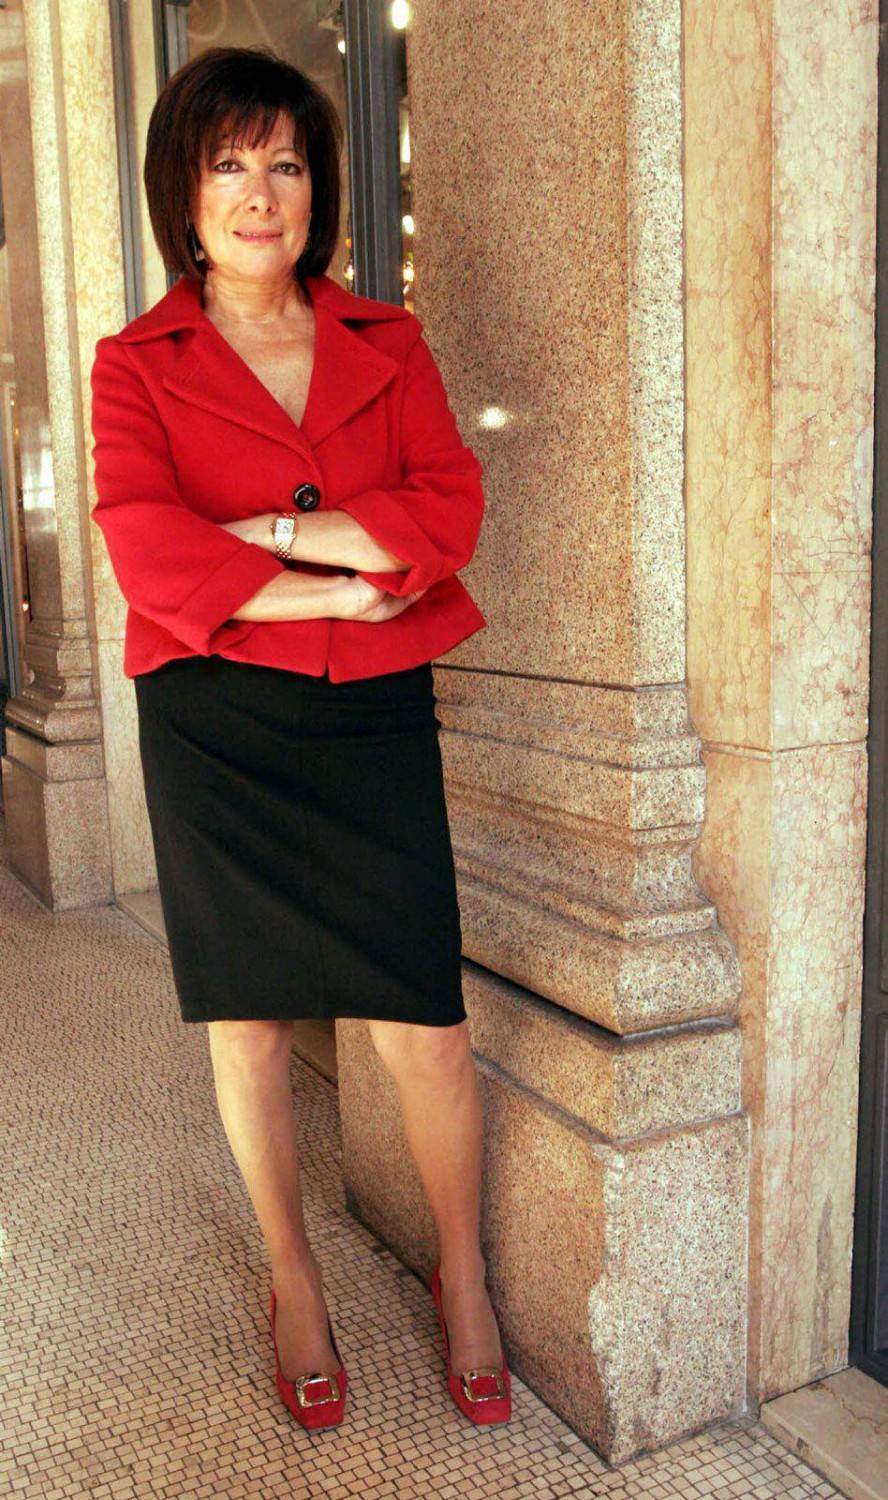 Casellati, l'emozione da presidente del Senato: "Un onore essere la prima donna"